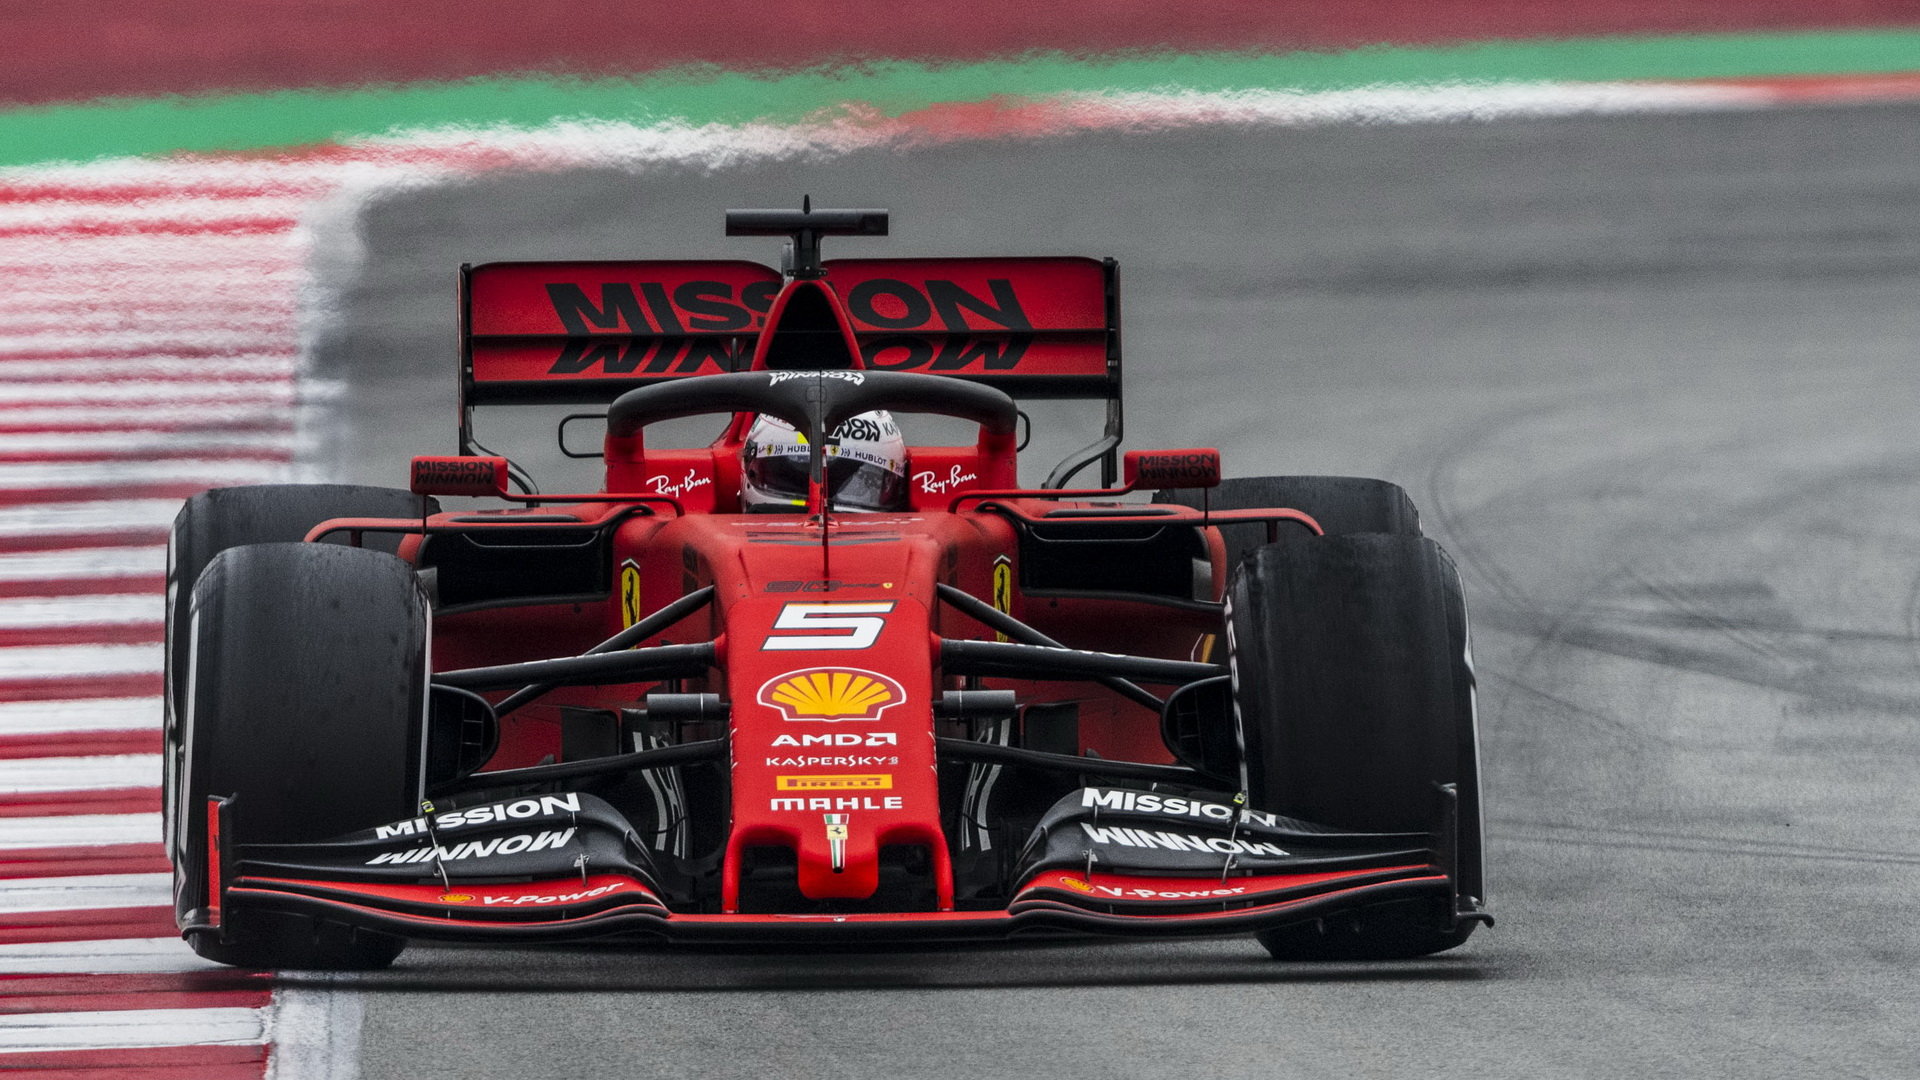 Sebastian Vettel ve voze Ferrari SF90 při třetím dnu testů v Barceloně